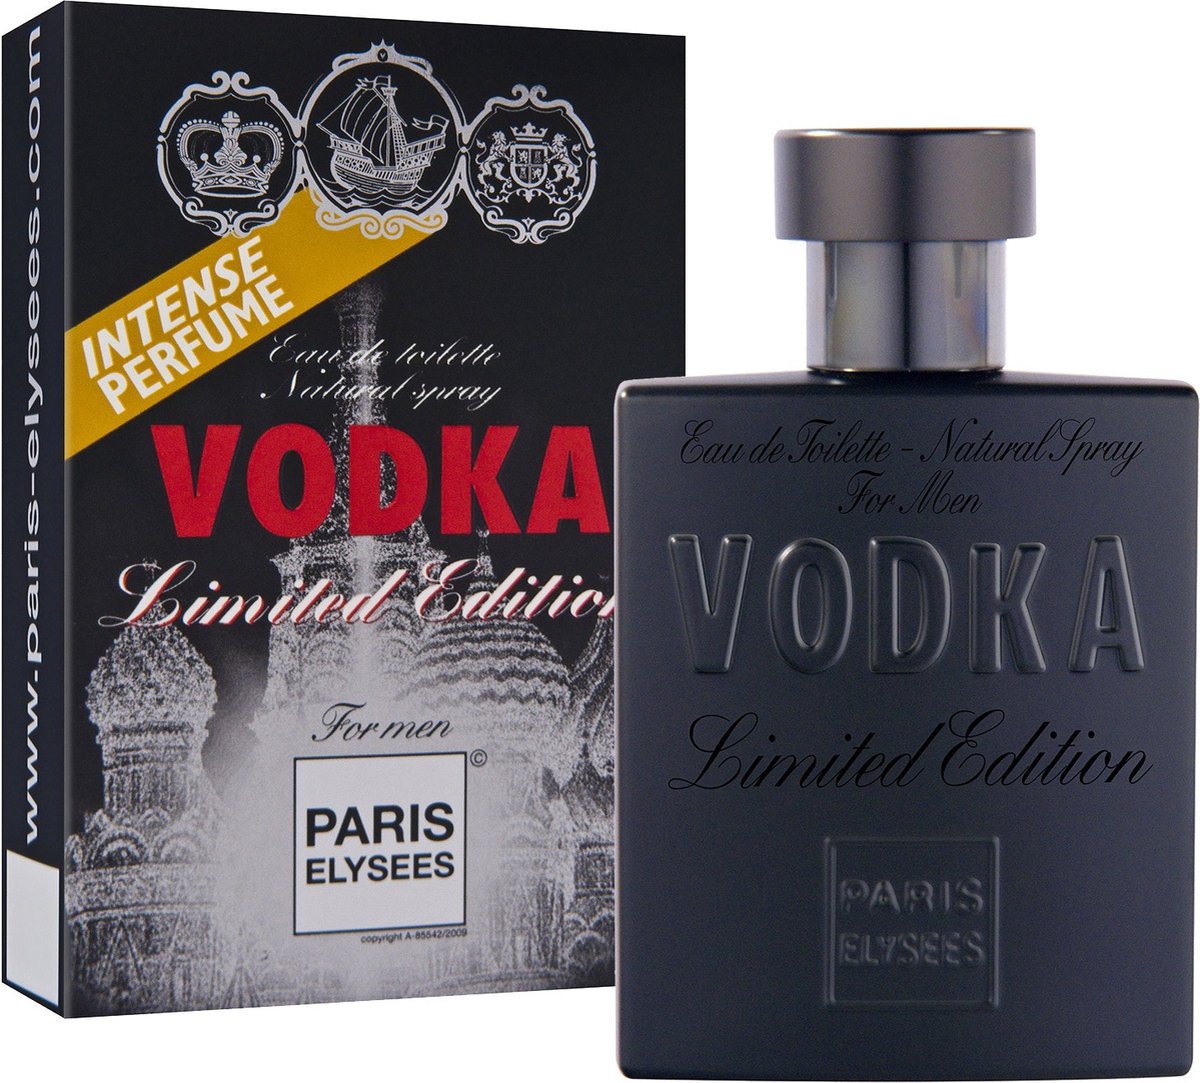 CADEAU TIP, Vodka Parfum Limited Edition een heerlijke sterke geur met Bergamot en Amber